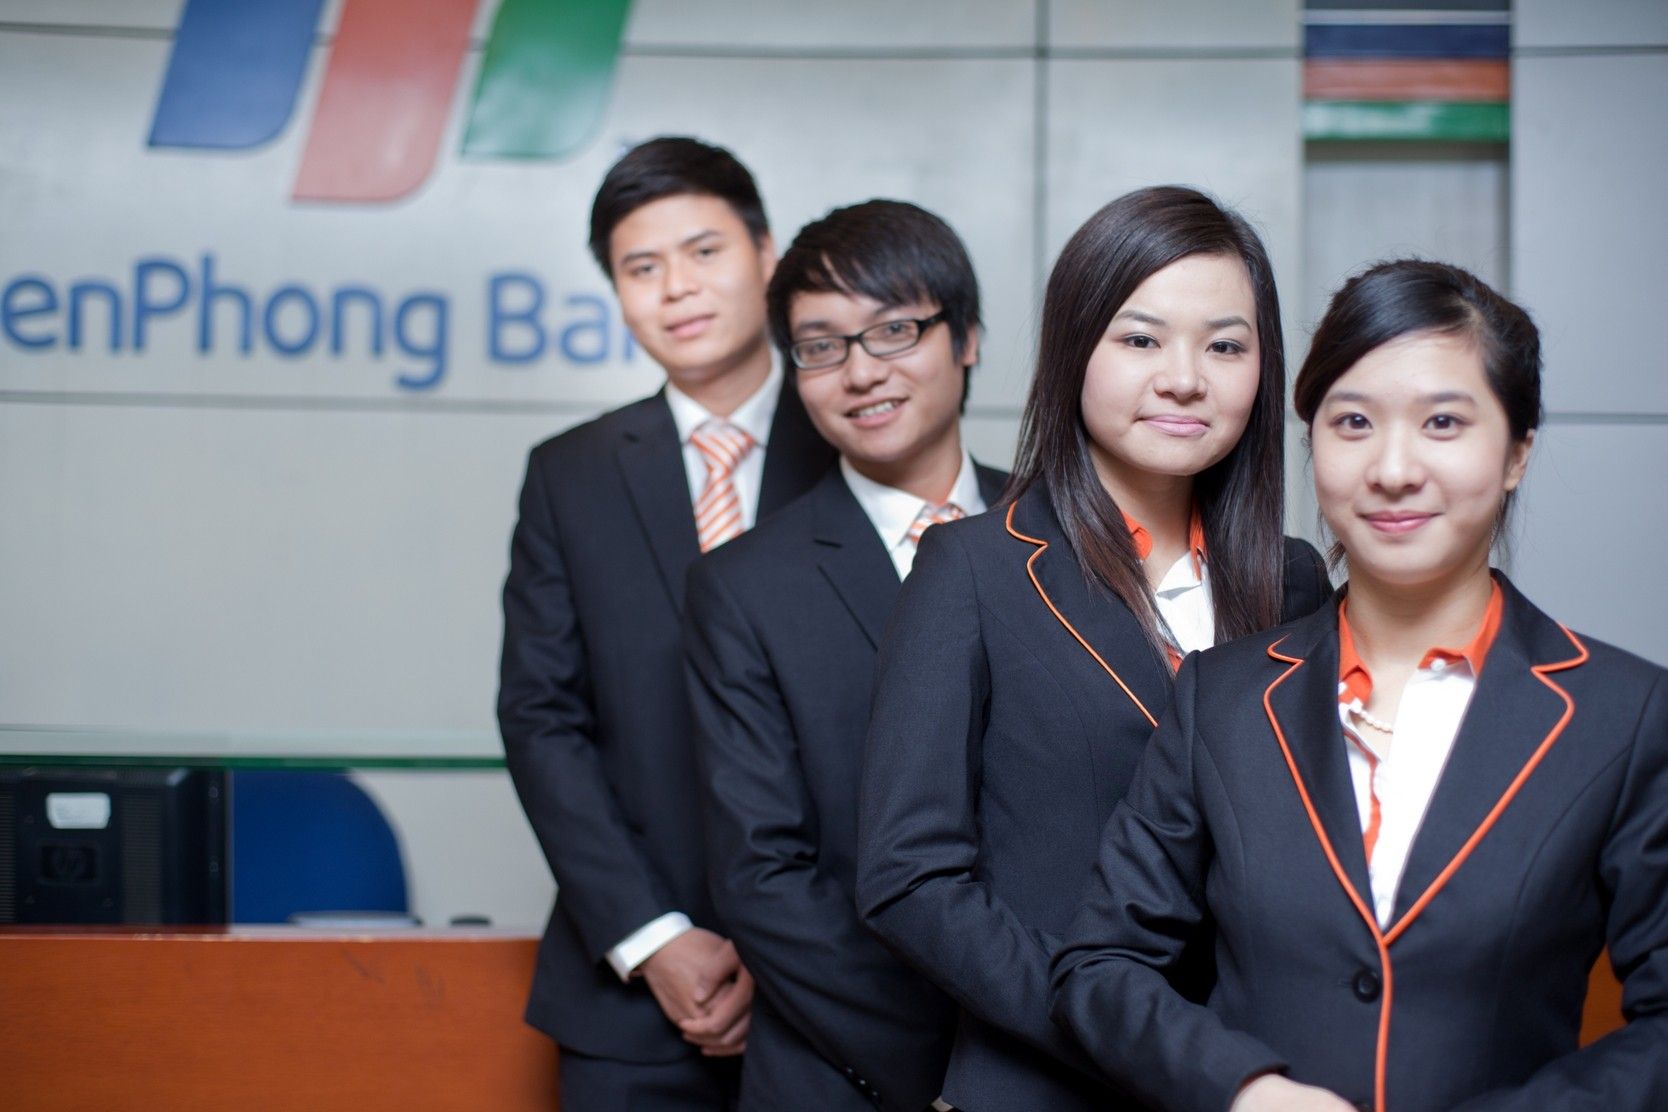 TienPhongBank tuyển chuyên viên lĩnh vực công nghệ thông tin